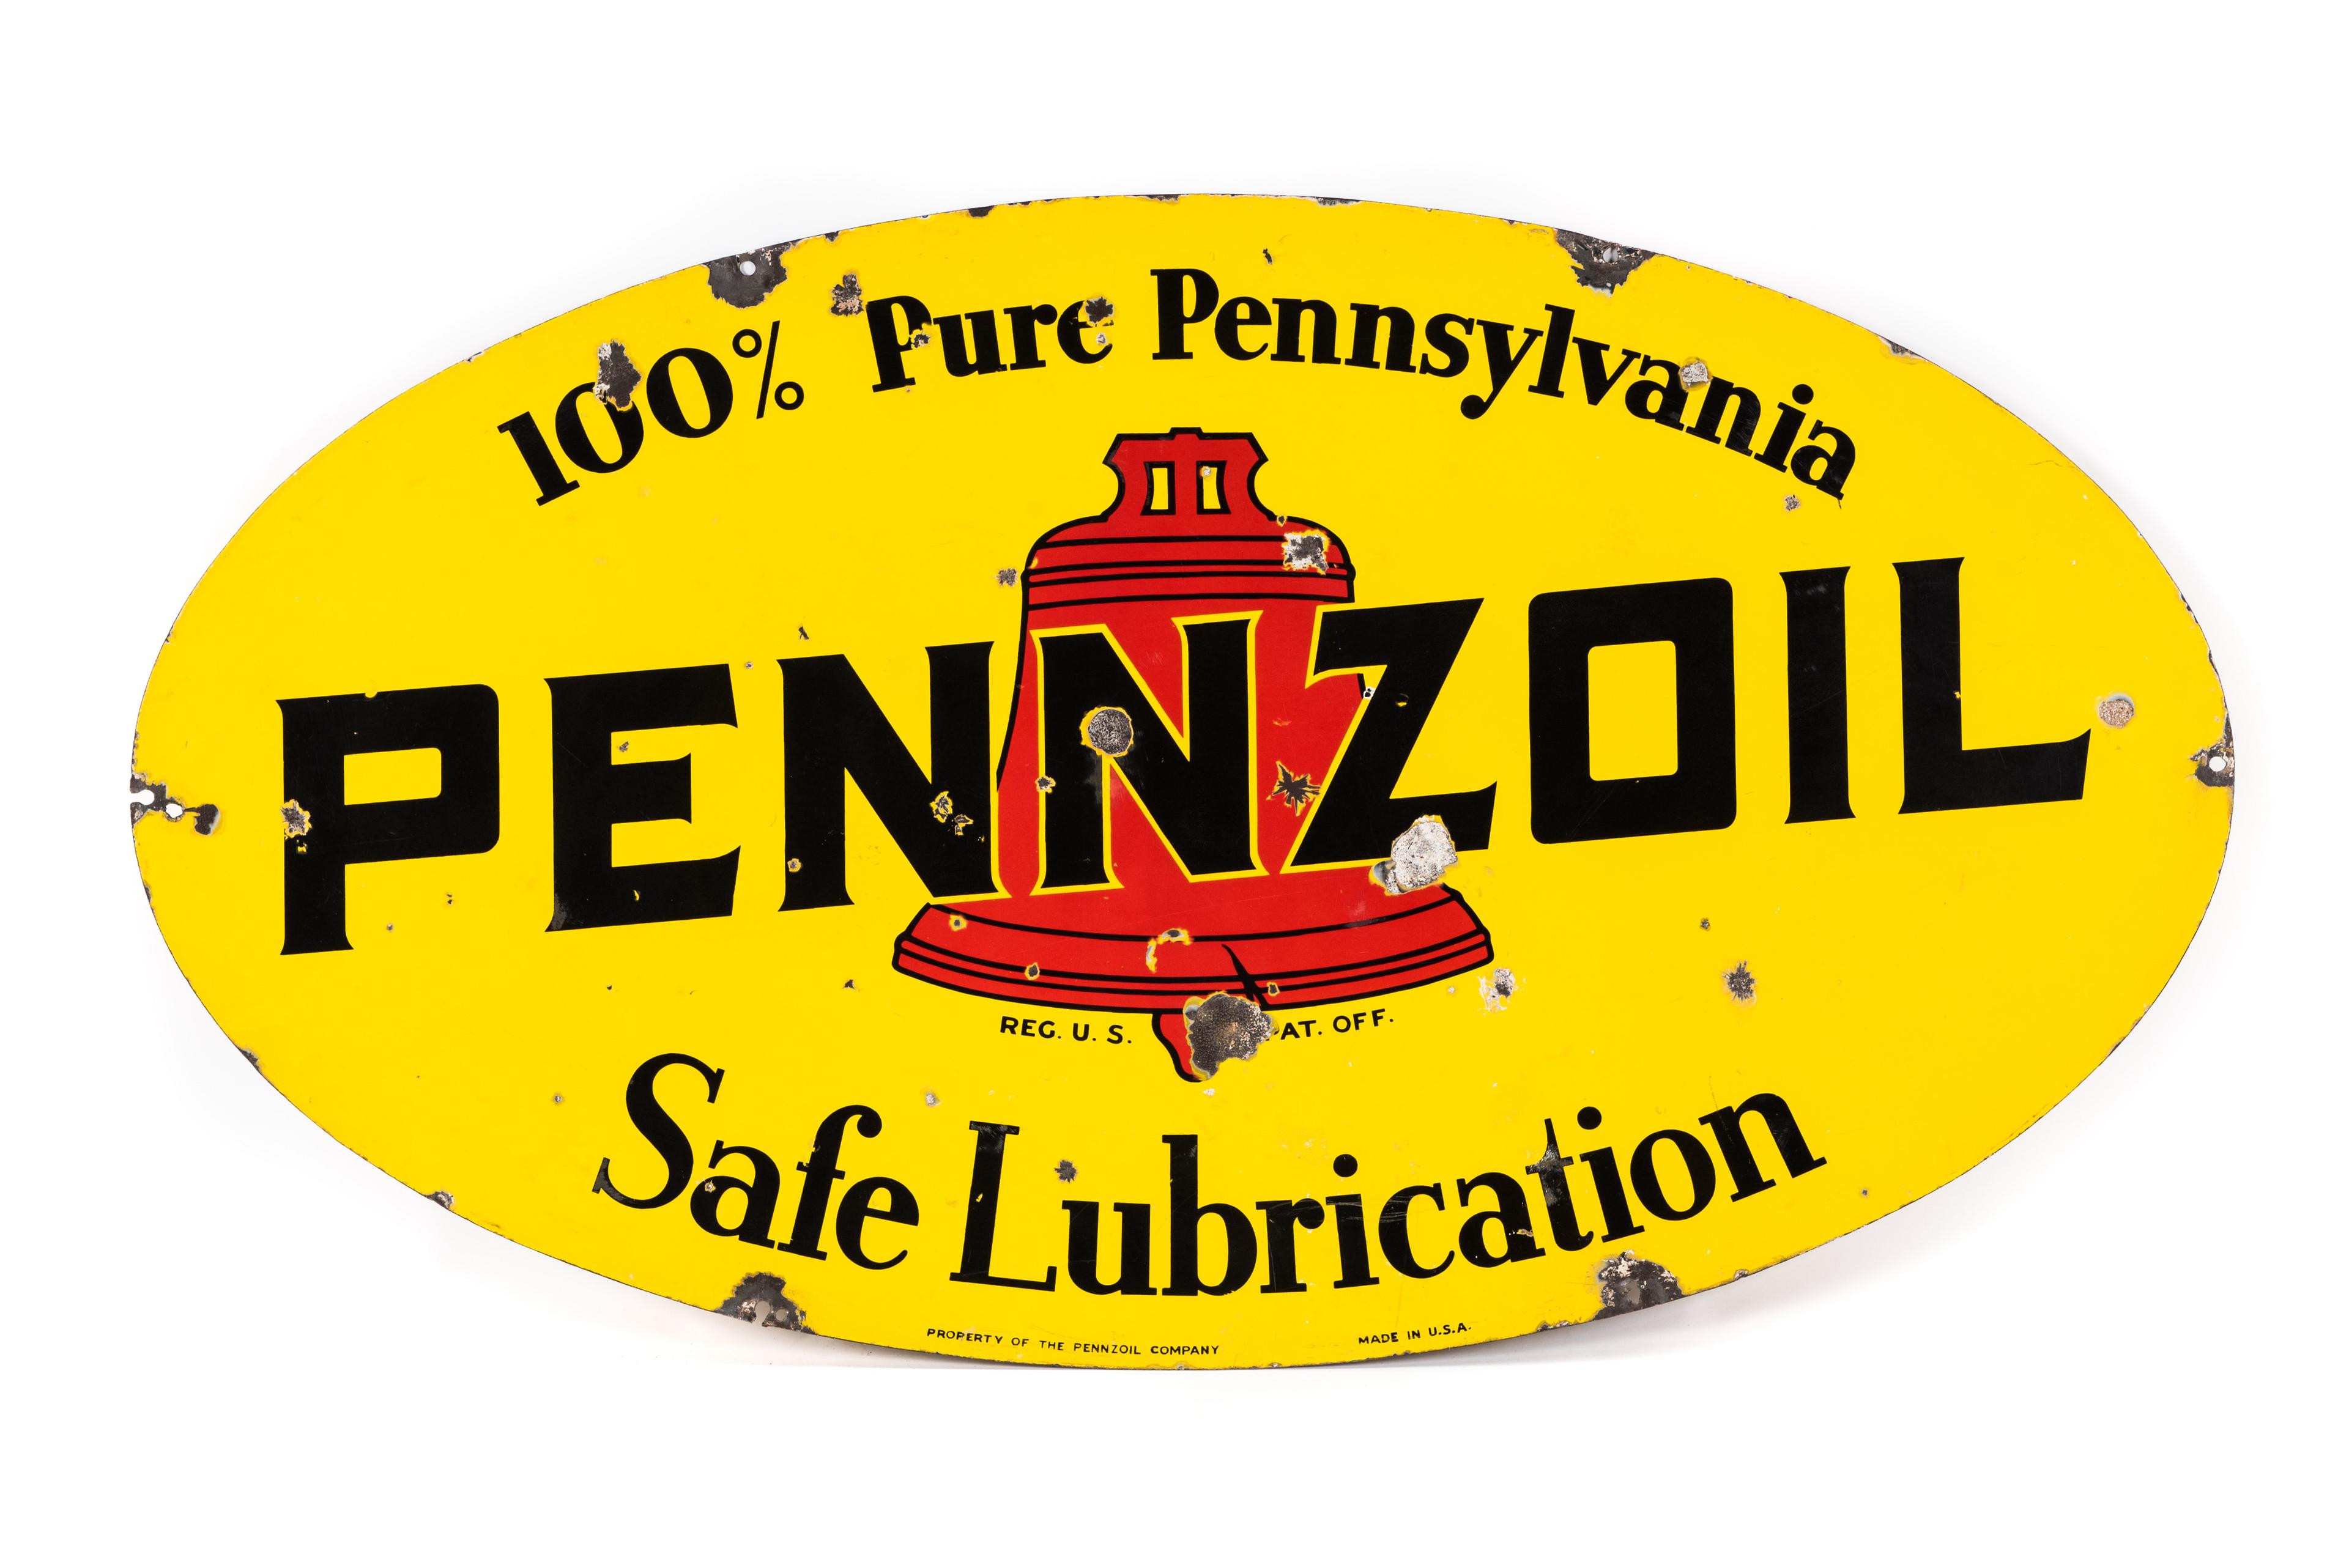 Large Pennzoil Safe Lubrication Porcelain Sign